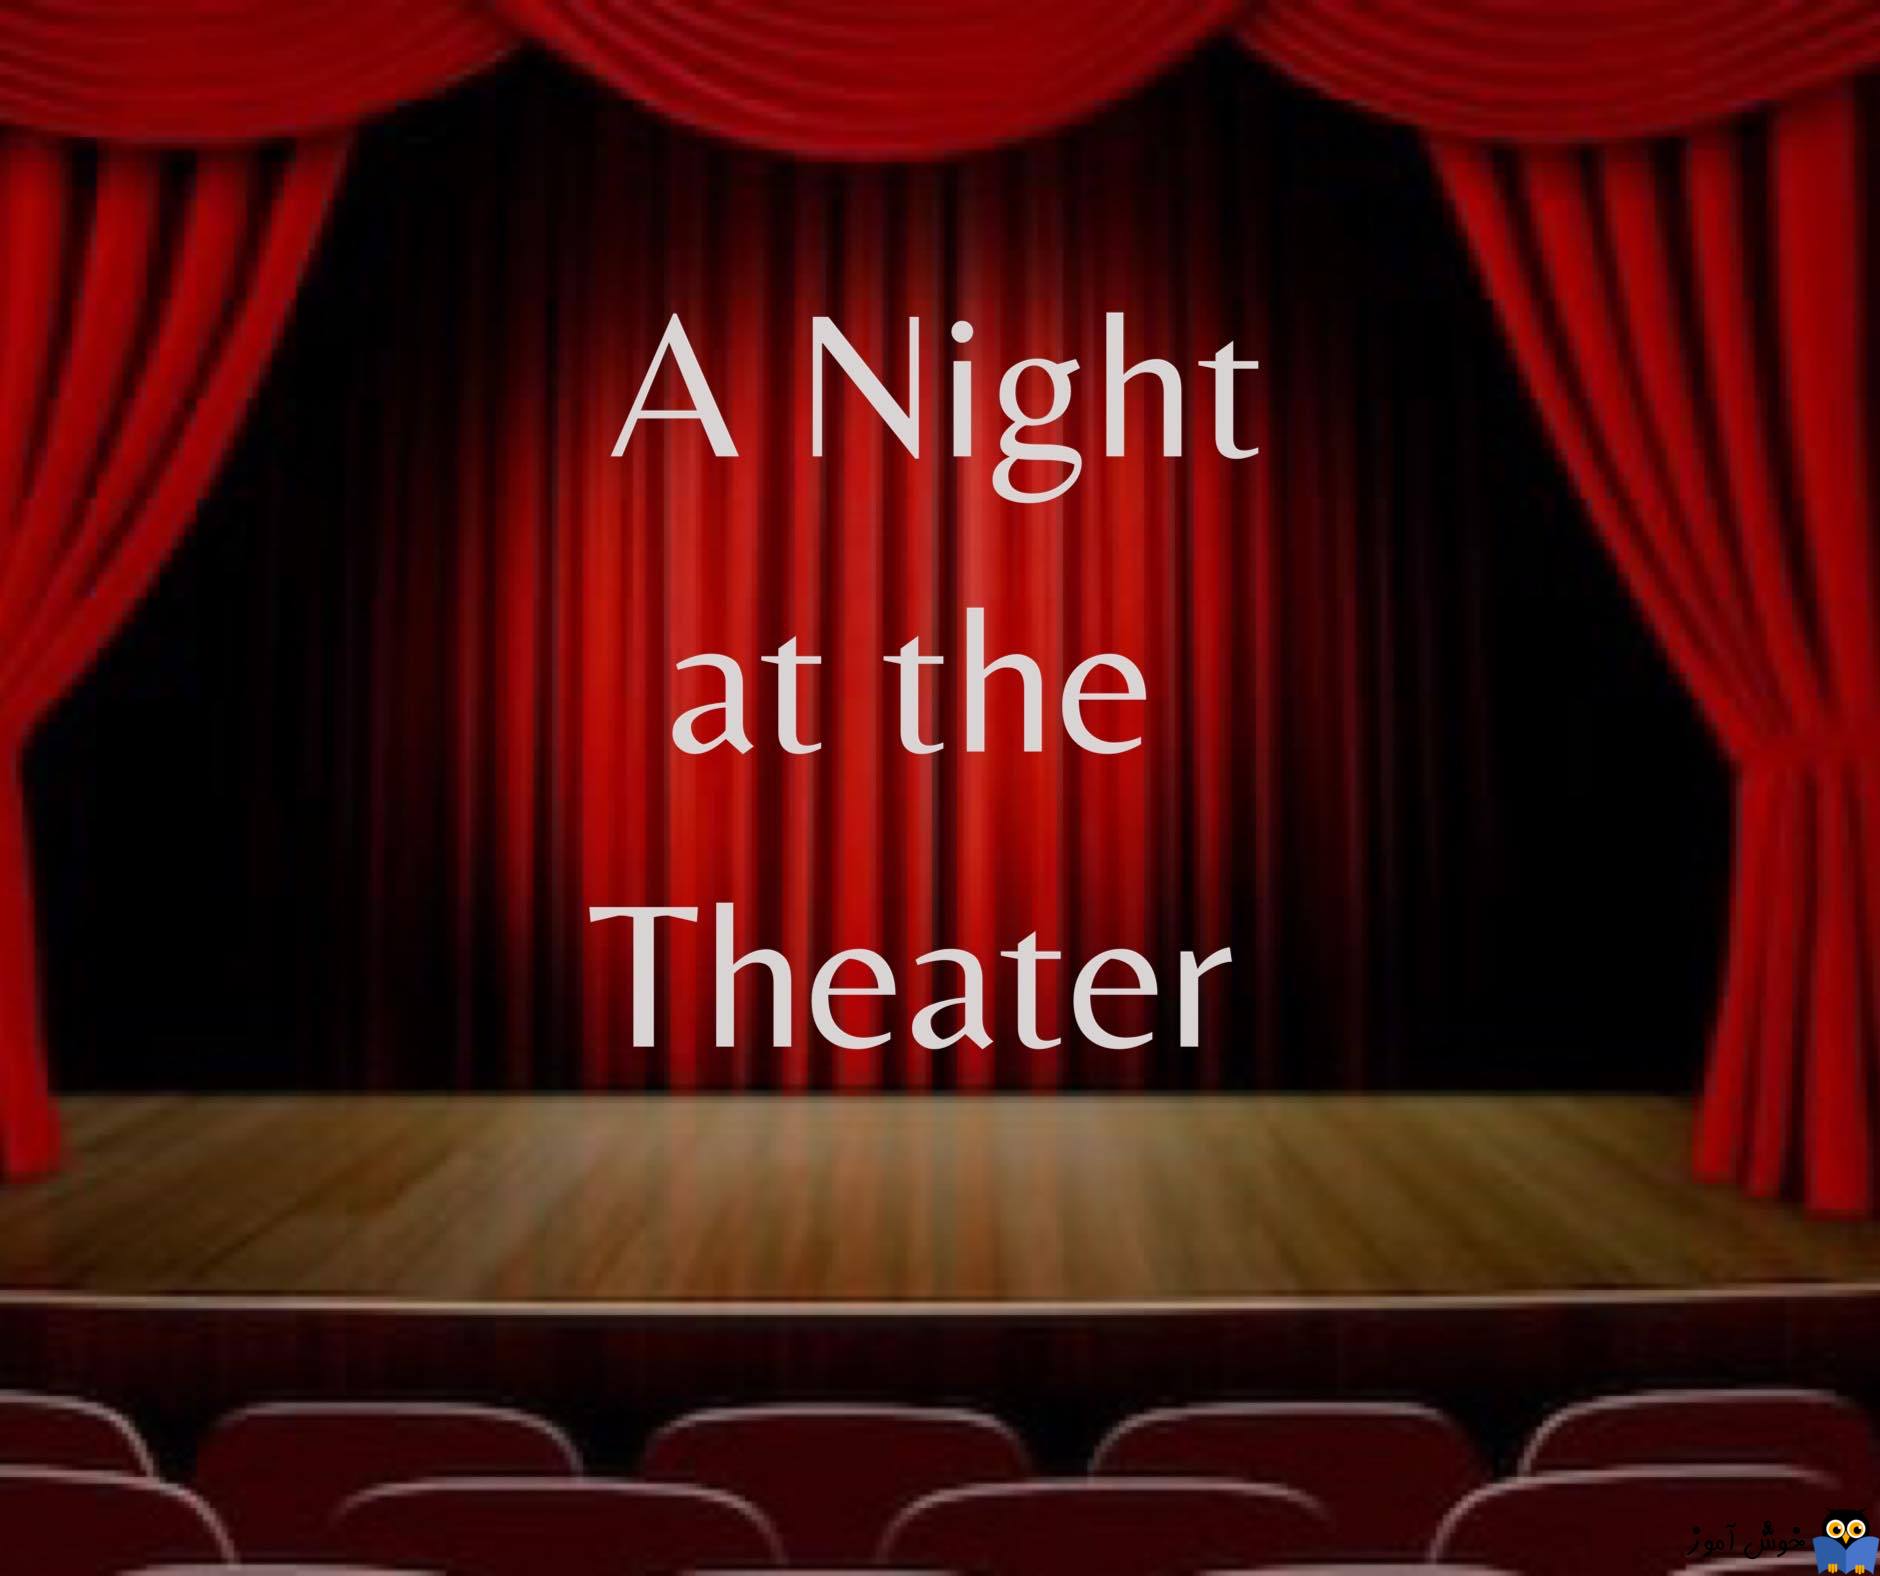 یادگیری انگلیسی آمریکایی-مکالمات و دیالوگ های روزمره- مکالمه 5-3: یک شب در سالن تئاتر(Dialogue 3-5: A Night at the Theater)